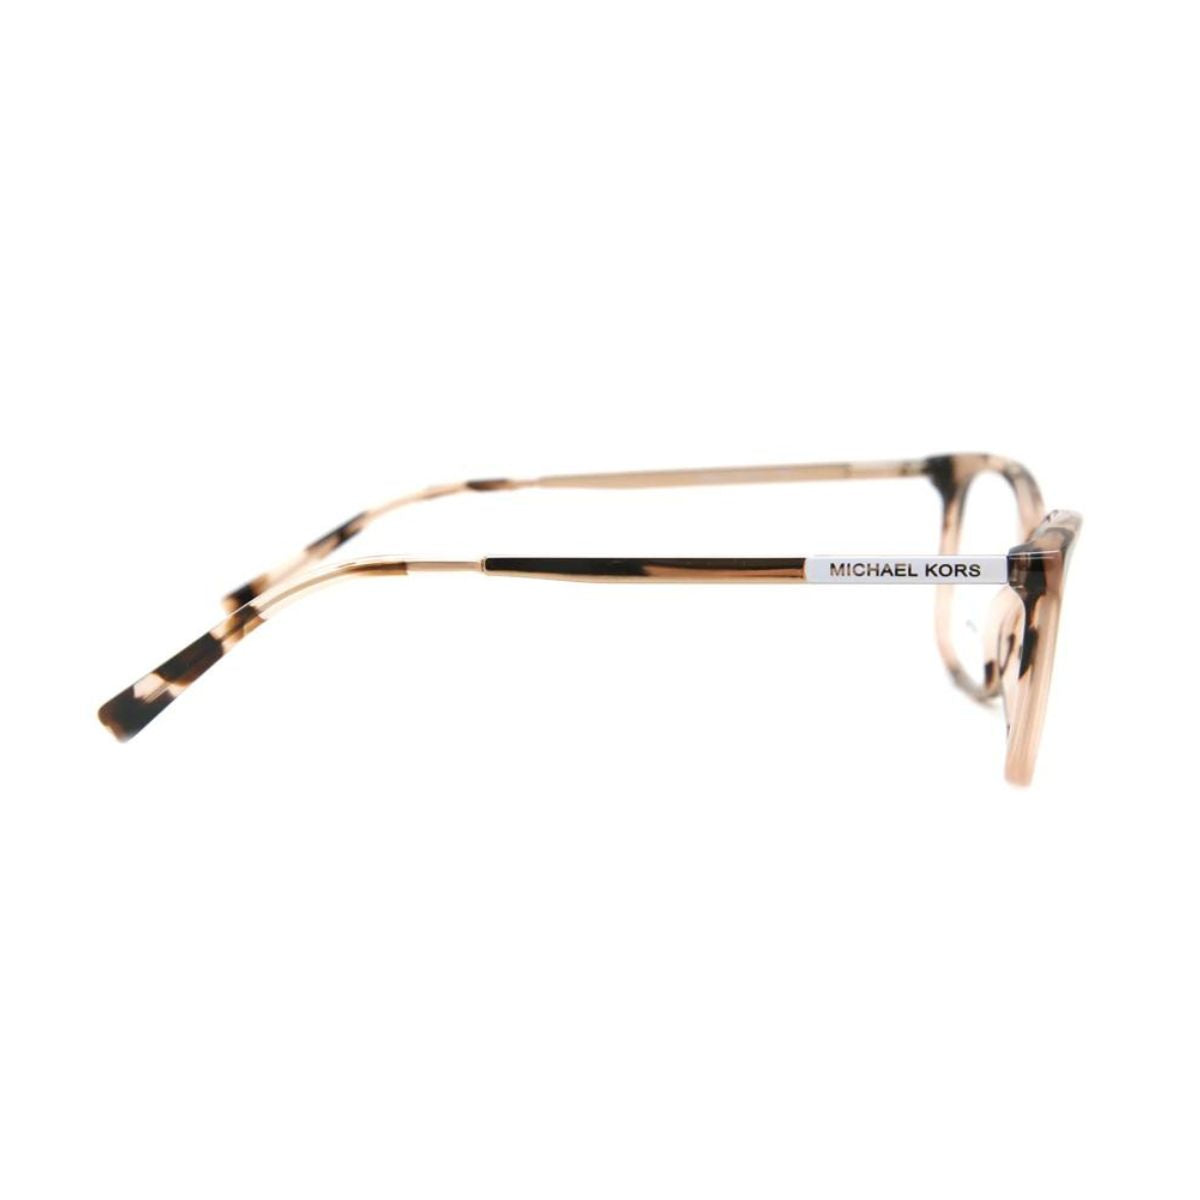 "Michael Kors 4030 3162 eyesight glasses frame for women's at optorium"